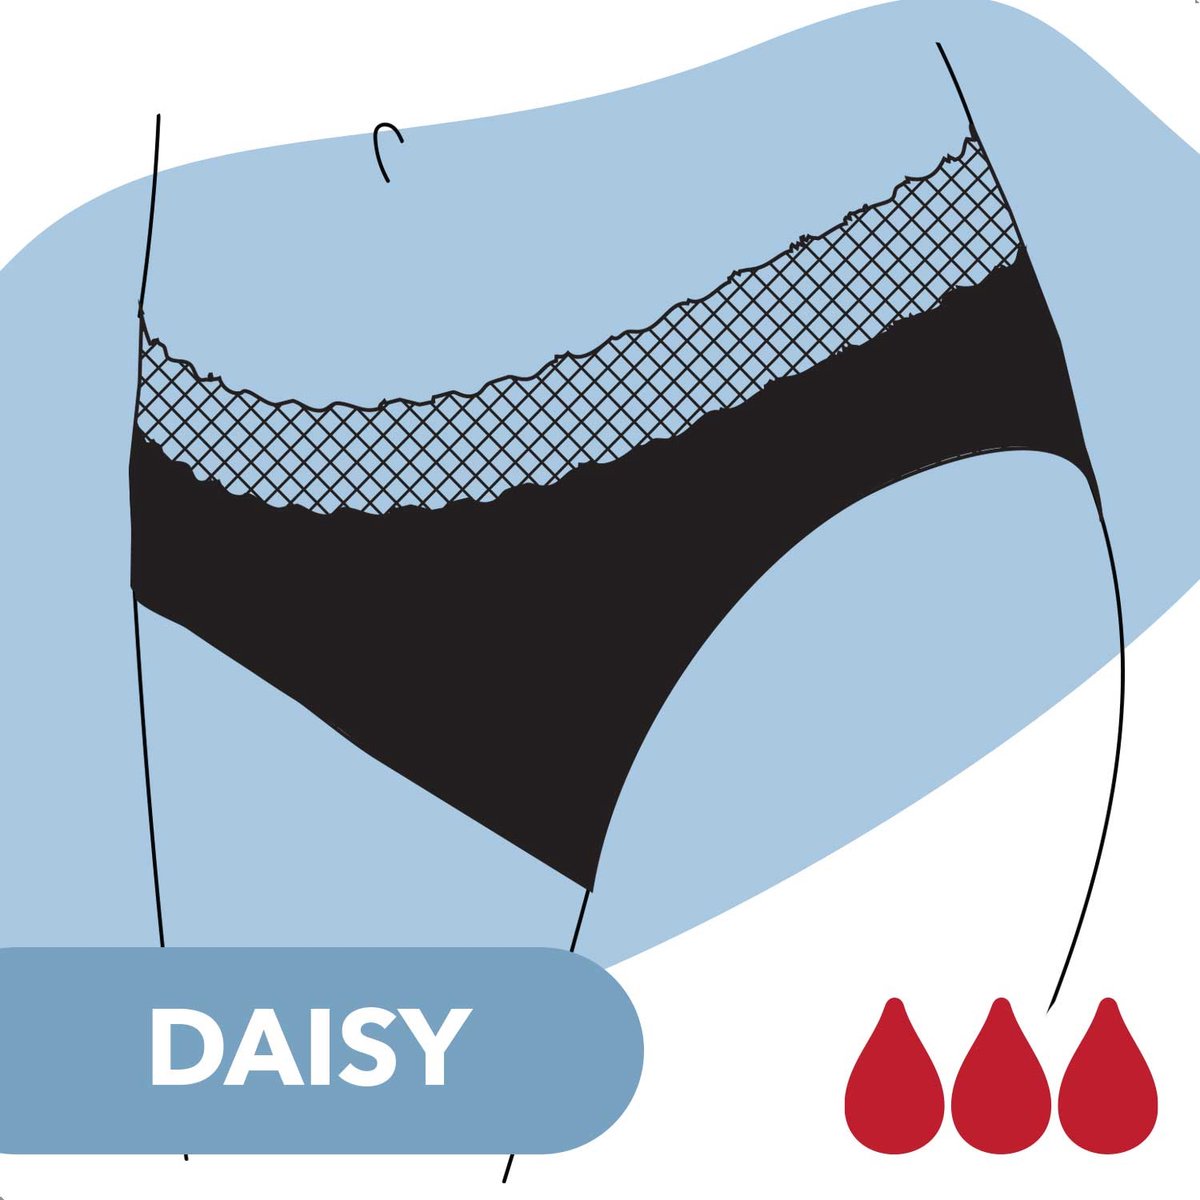 Bamboozy Menstruatie Ondergoed 4-laags Mid-Heup Zwart Period Underwear Menstrueren Incontinentie Zero Waste Daisy - Bamboozy